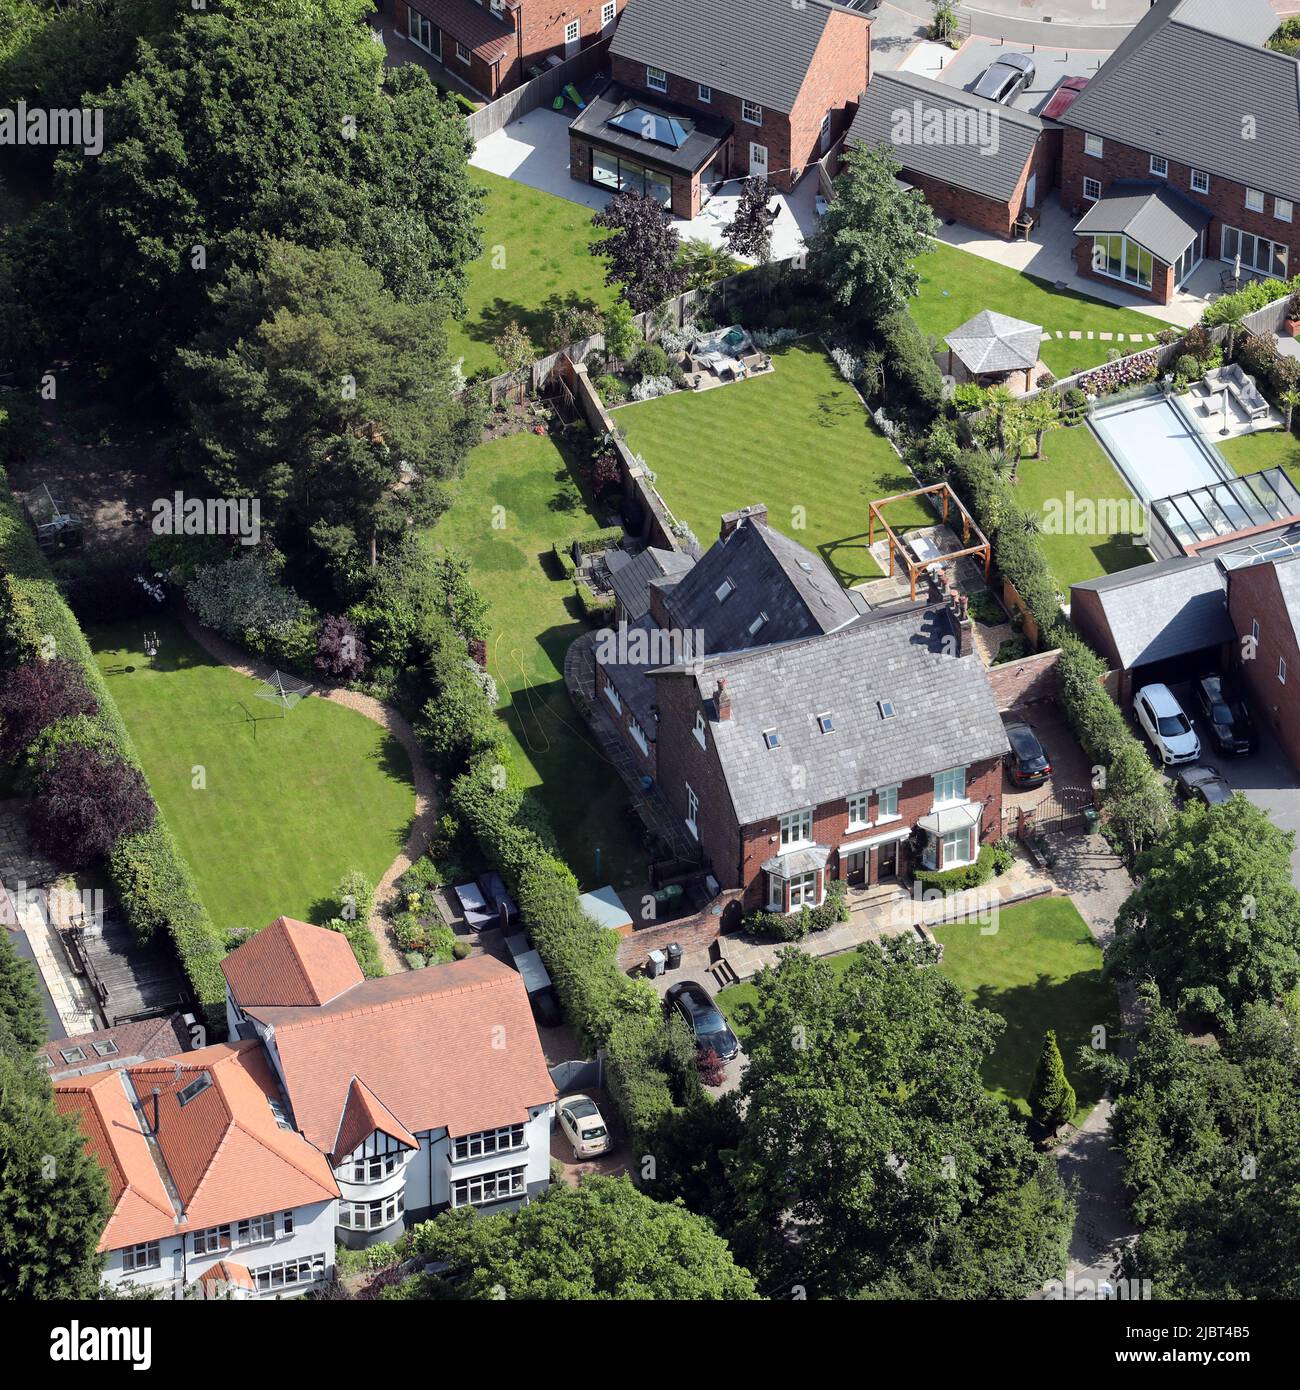 Luftaufnahme des alten Hauses von Alan Turing (wo er starb) in Wilmslow, Ceshire (linke Seite des Doppelhauses, das hier gezeigt wird) Stockfoto